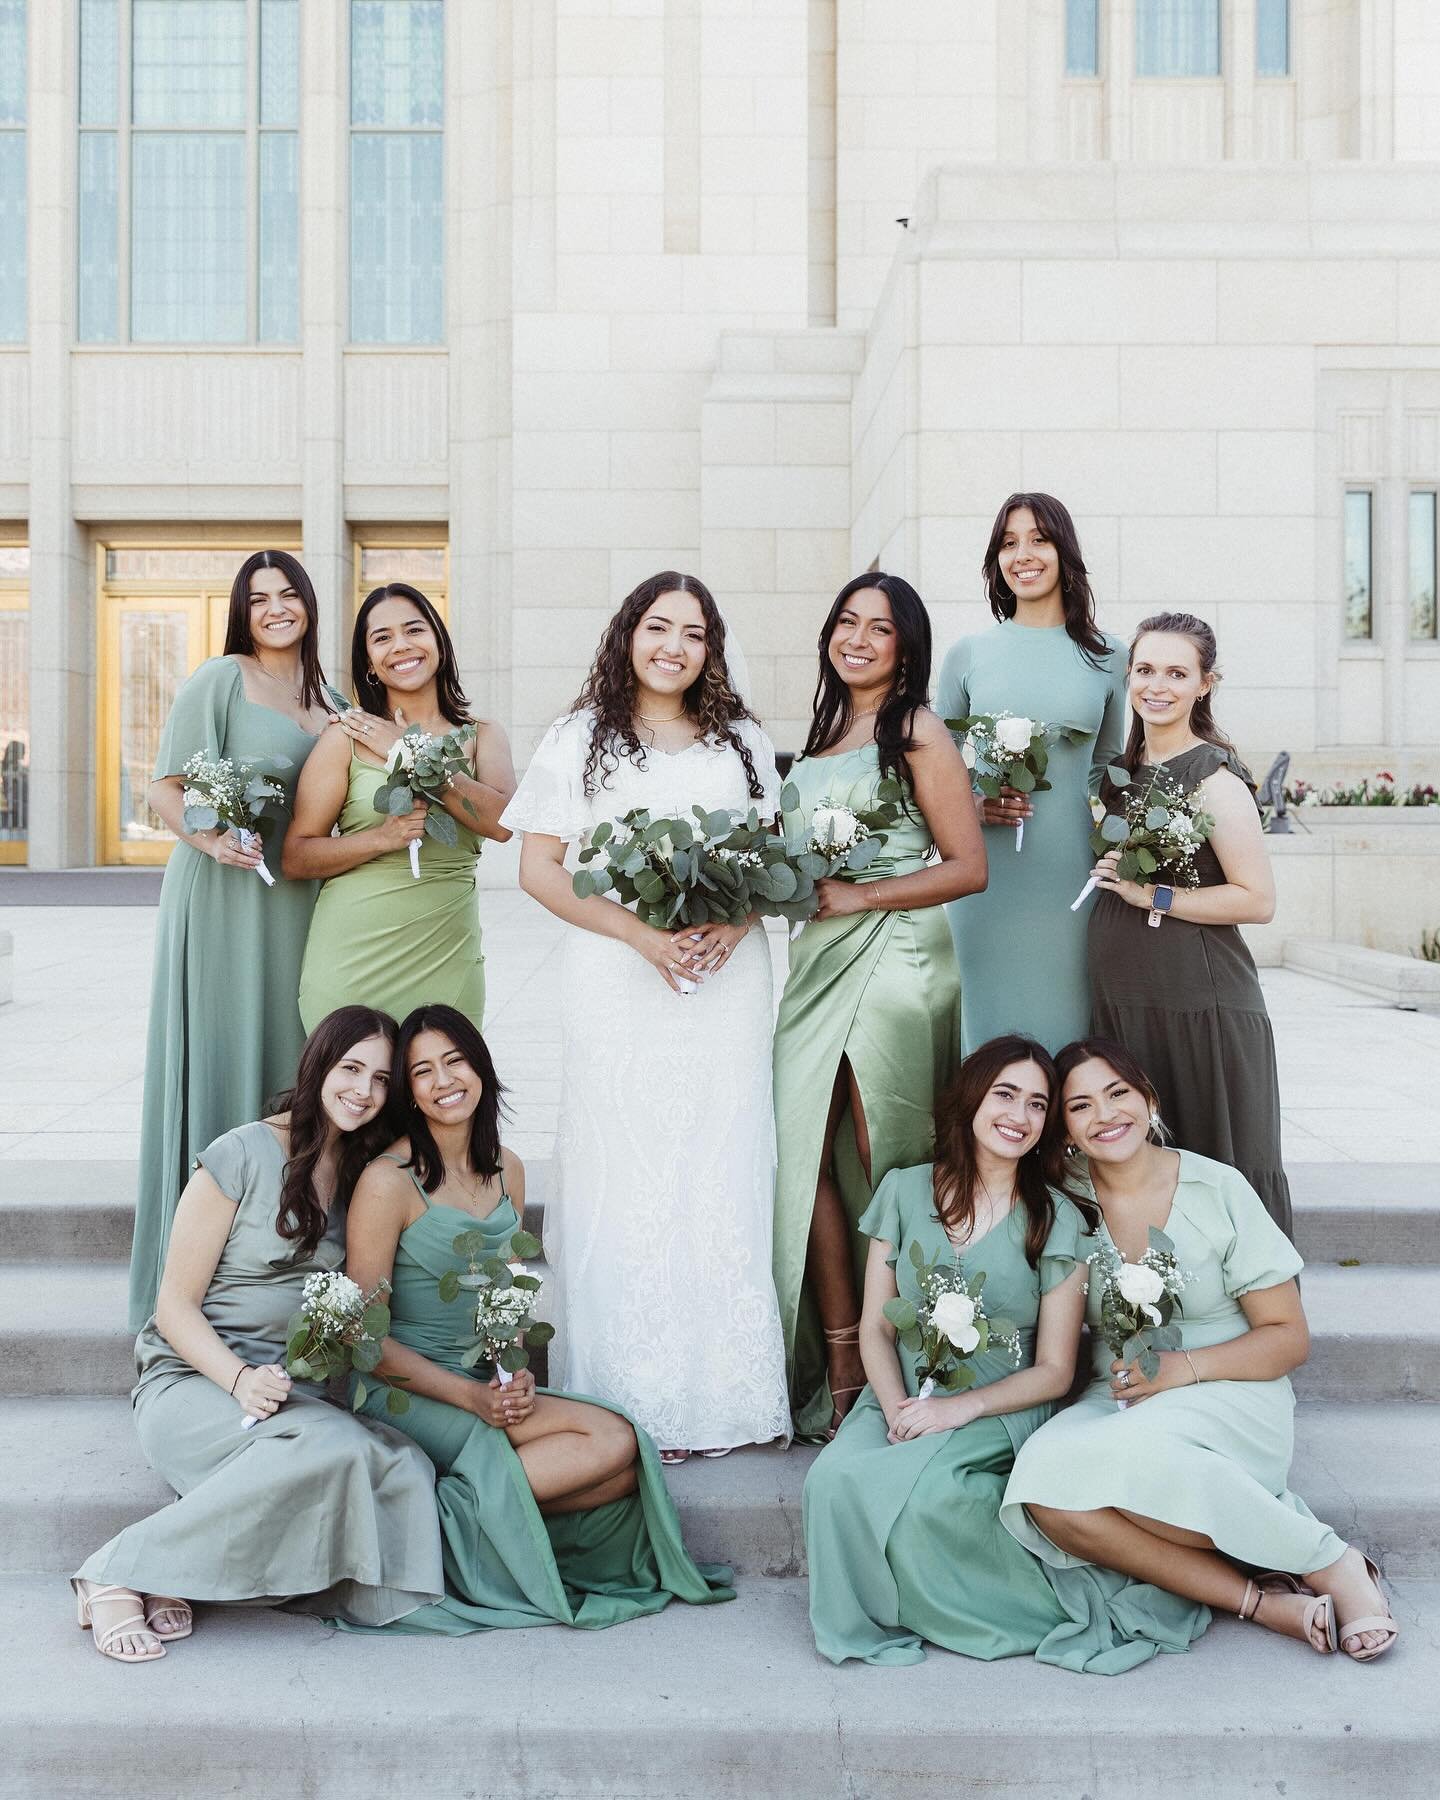 Shades of green 💚🤍 #bridemaids #utahweddingphotographer #destinationweddingphotographer #utahbride #bridemaidsdress